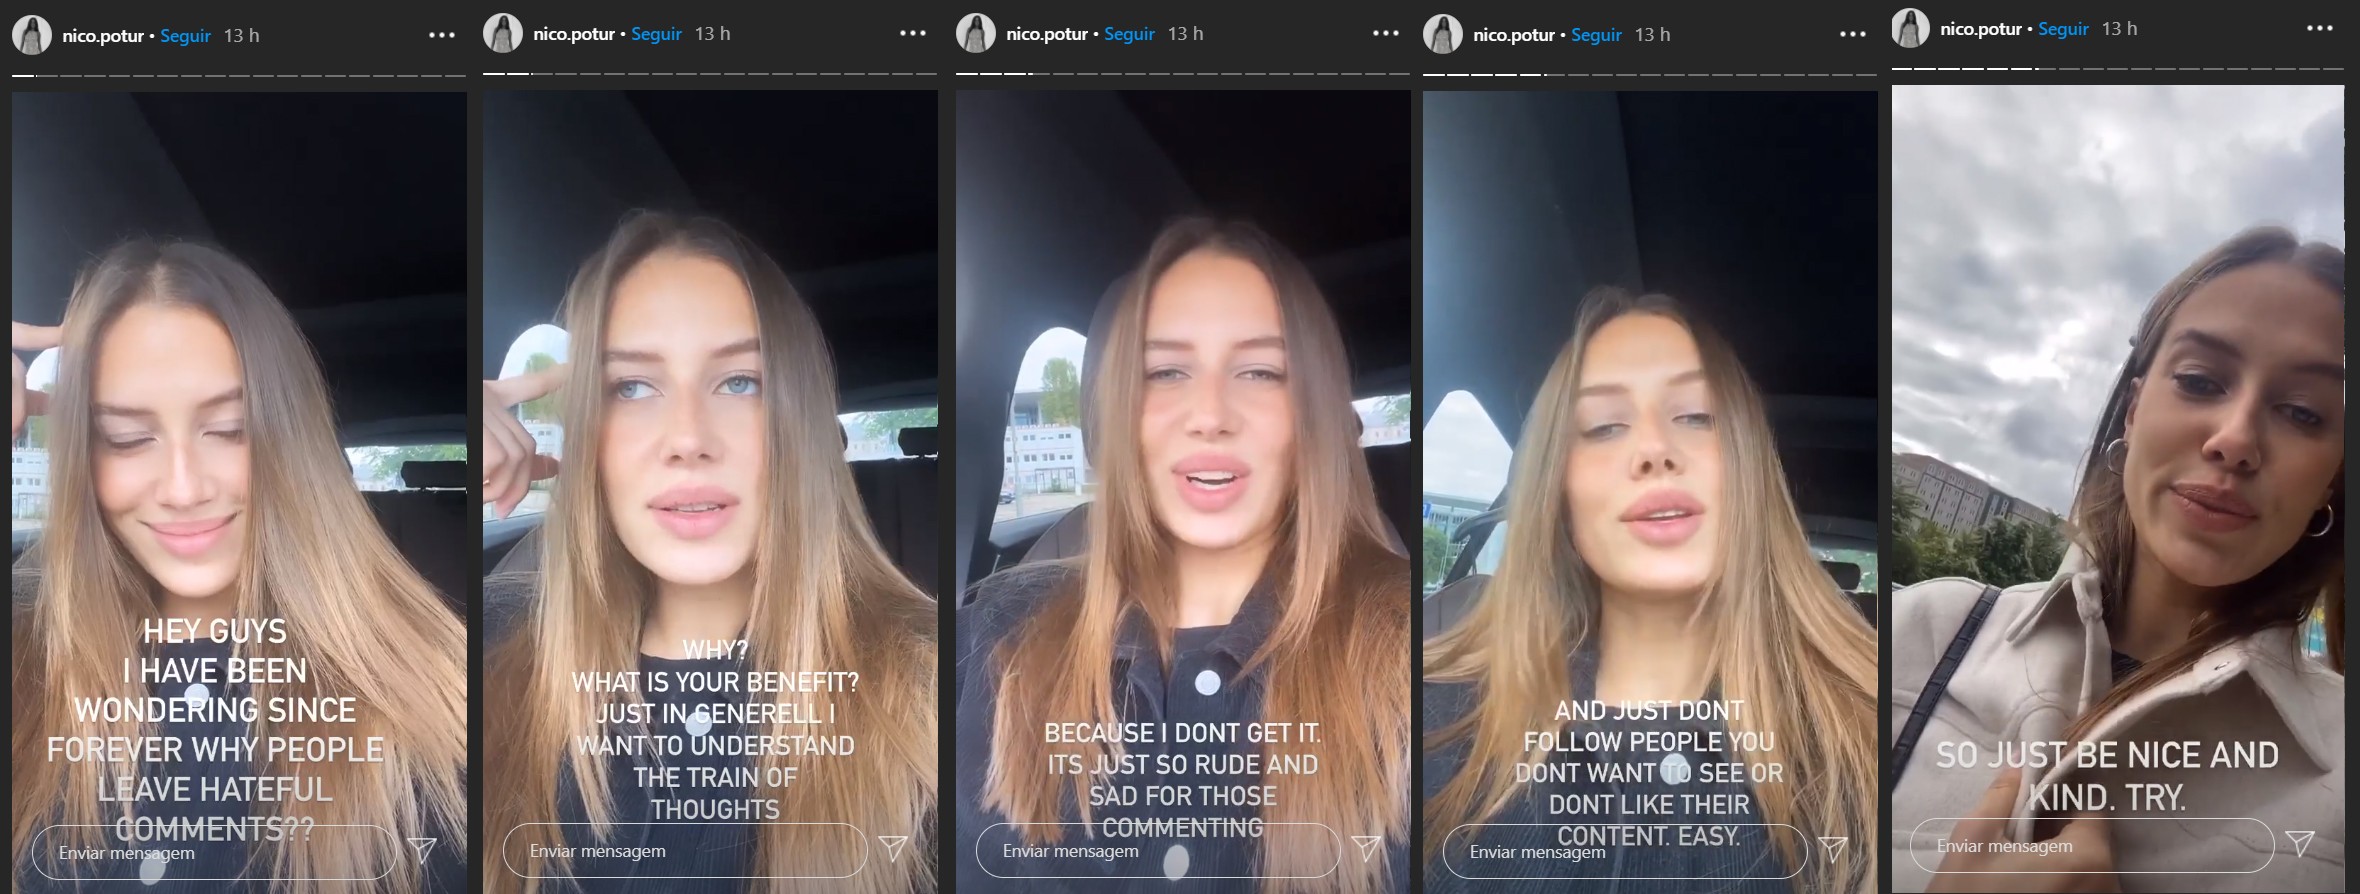 Nicole Poturalski desabafou sobre comentários negativos no Instagram em uma série de vídeos publicados na rede social (Foto: Reprodução / Instagram)